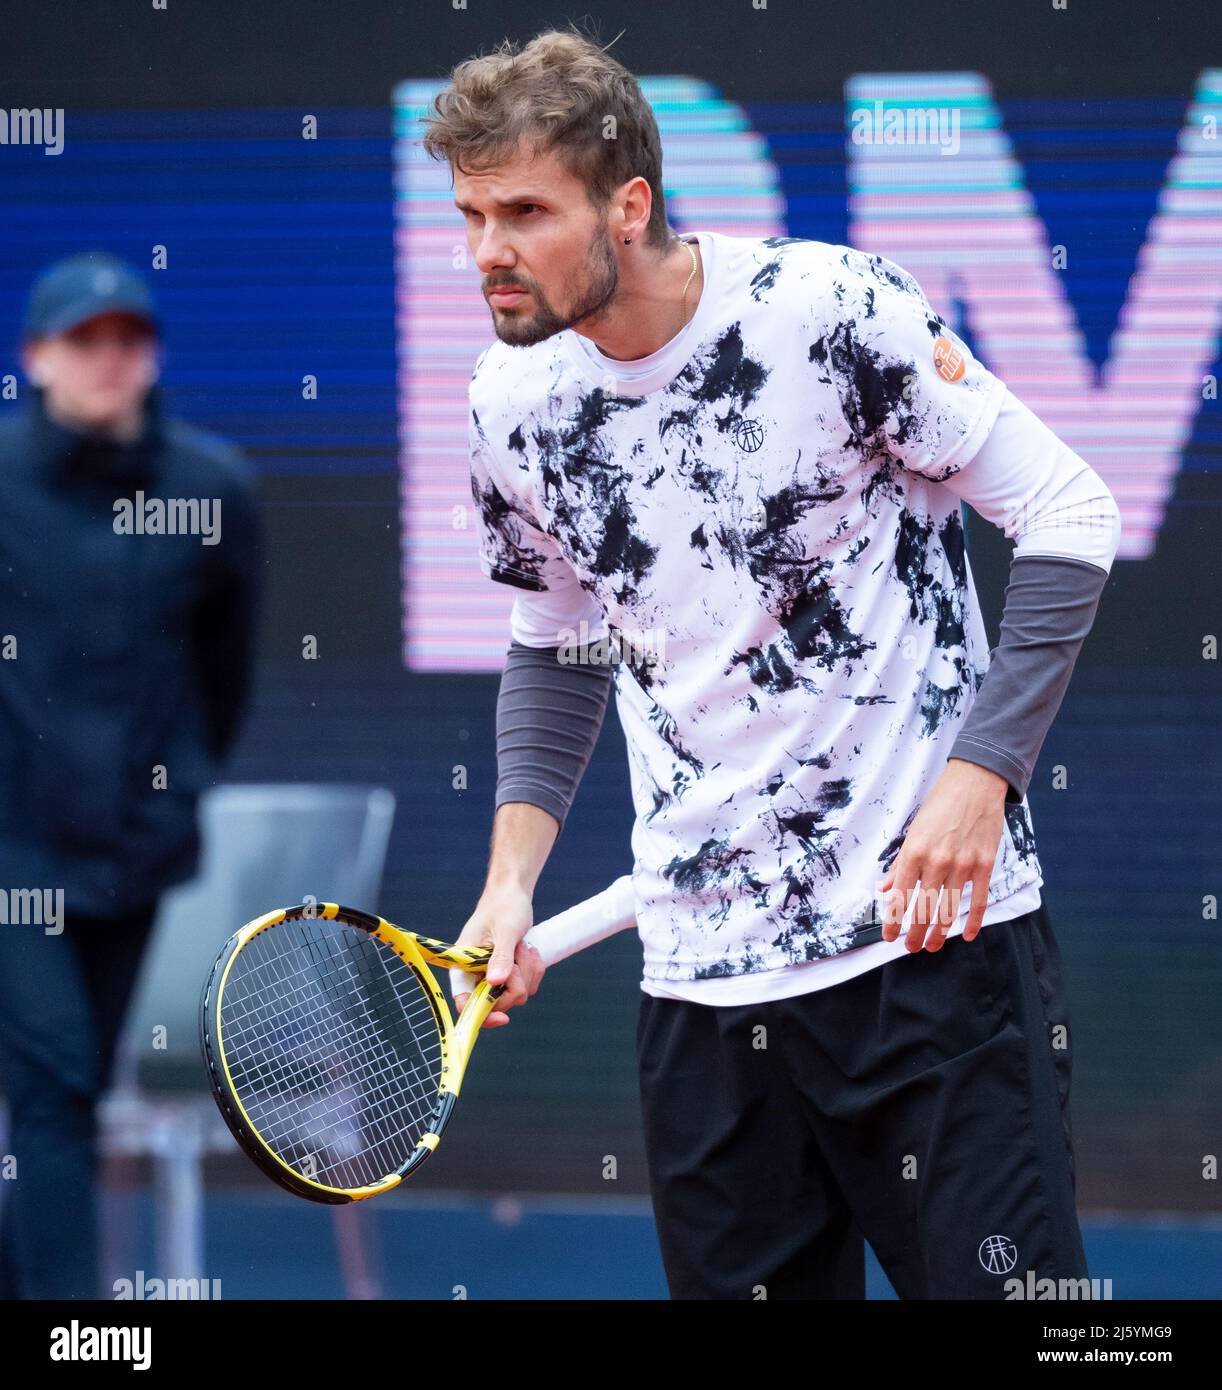 München, Deutschland. 26. April 2022. Tennis: ATP Tour - München, Herren,  1. Runden. Otte (Deutschland) - Topo (Serbien). Oscar Otte in Aktion.  Quelle: Sven Hoppe/dpa/Alamy Live News Stockfotografie - Alamy